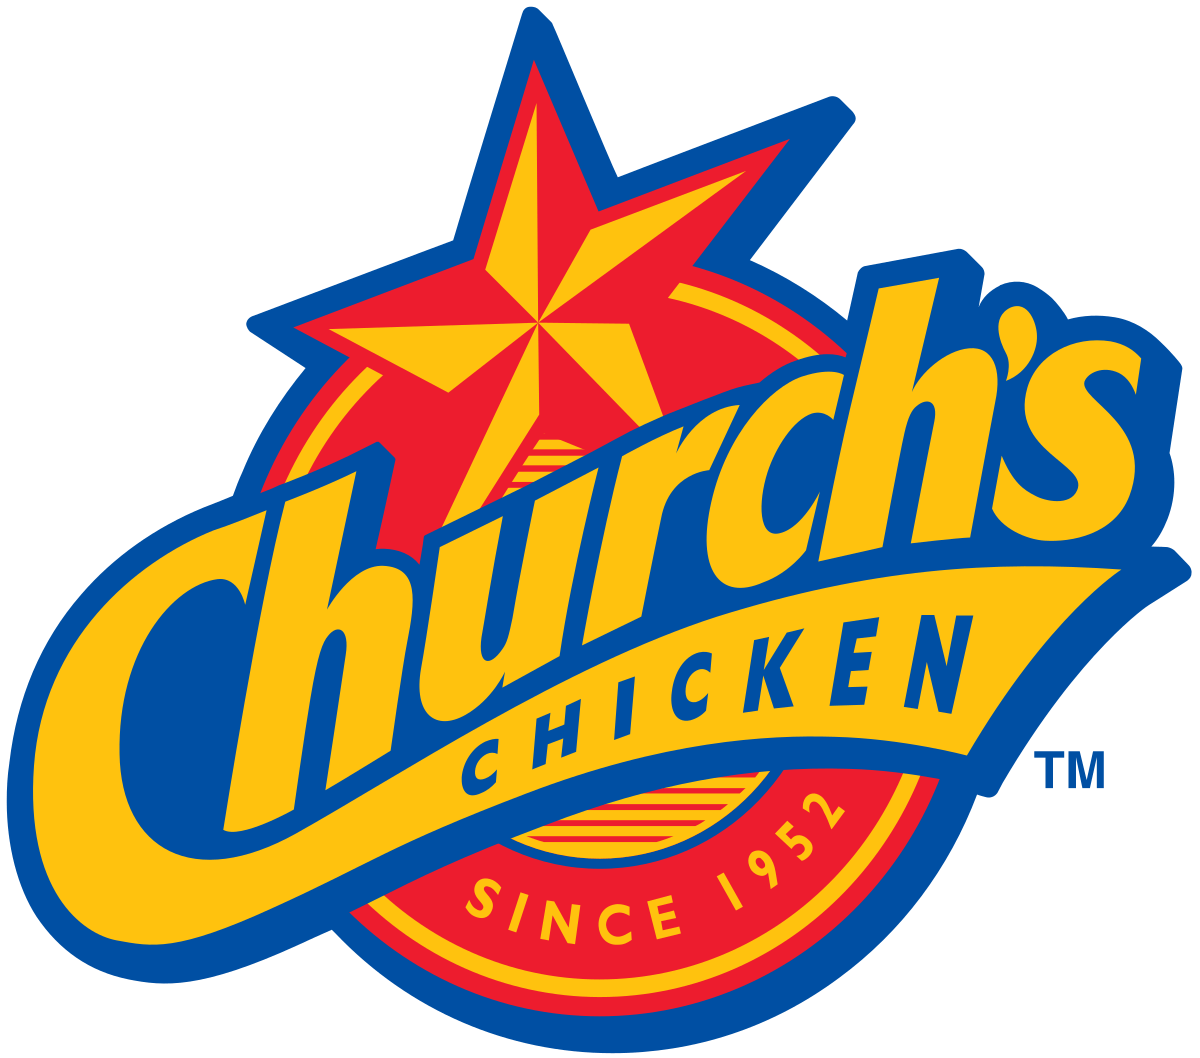 Church's with Restaurant Logo - Church's Chicken